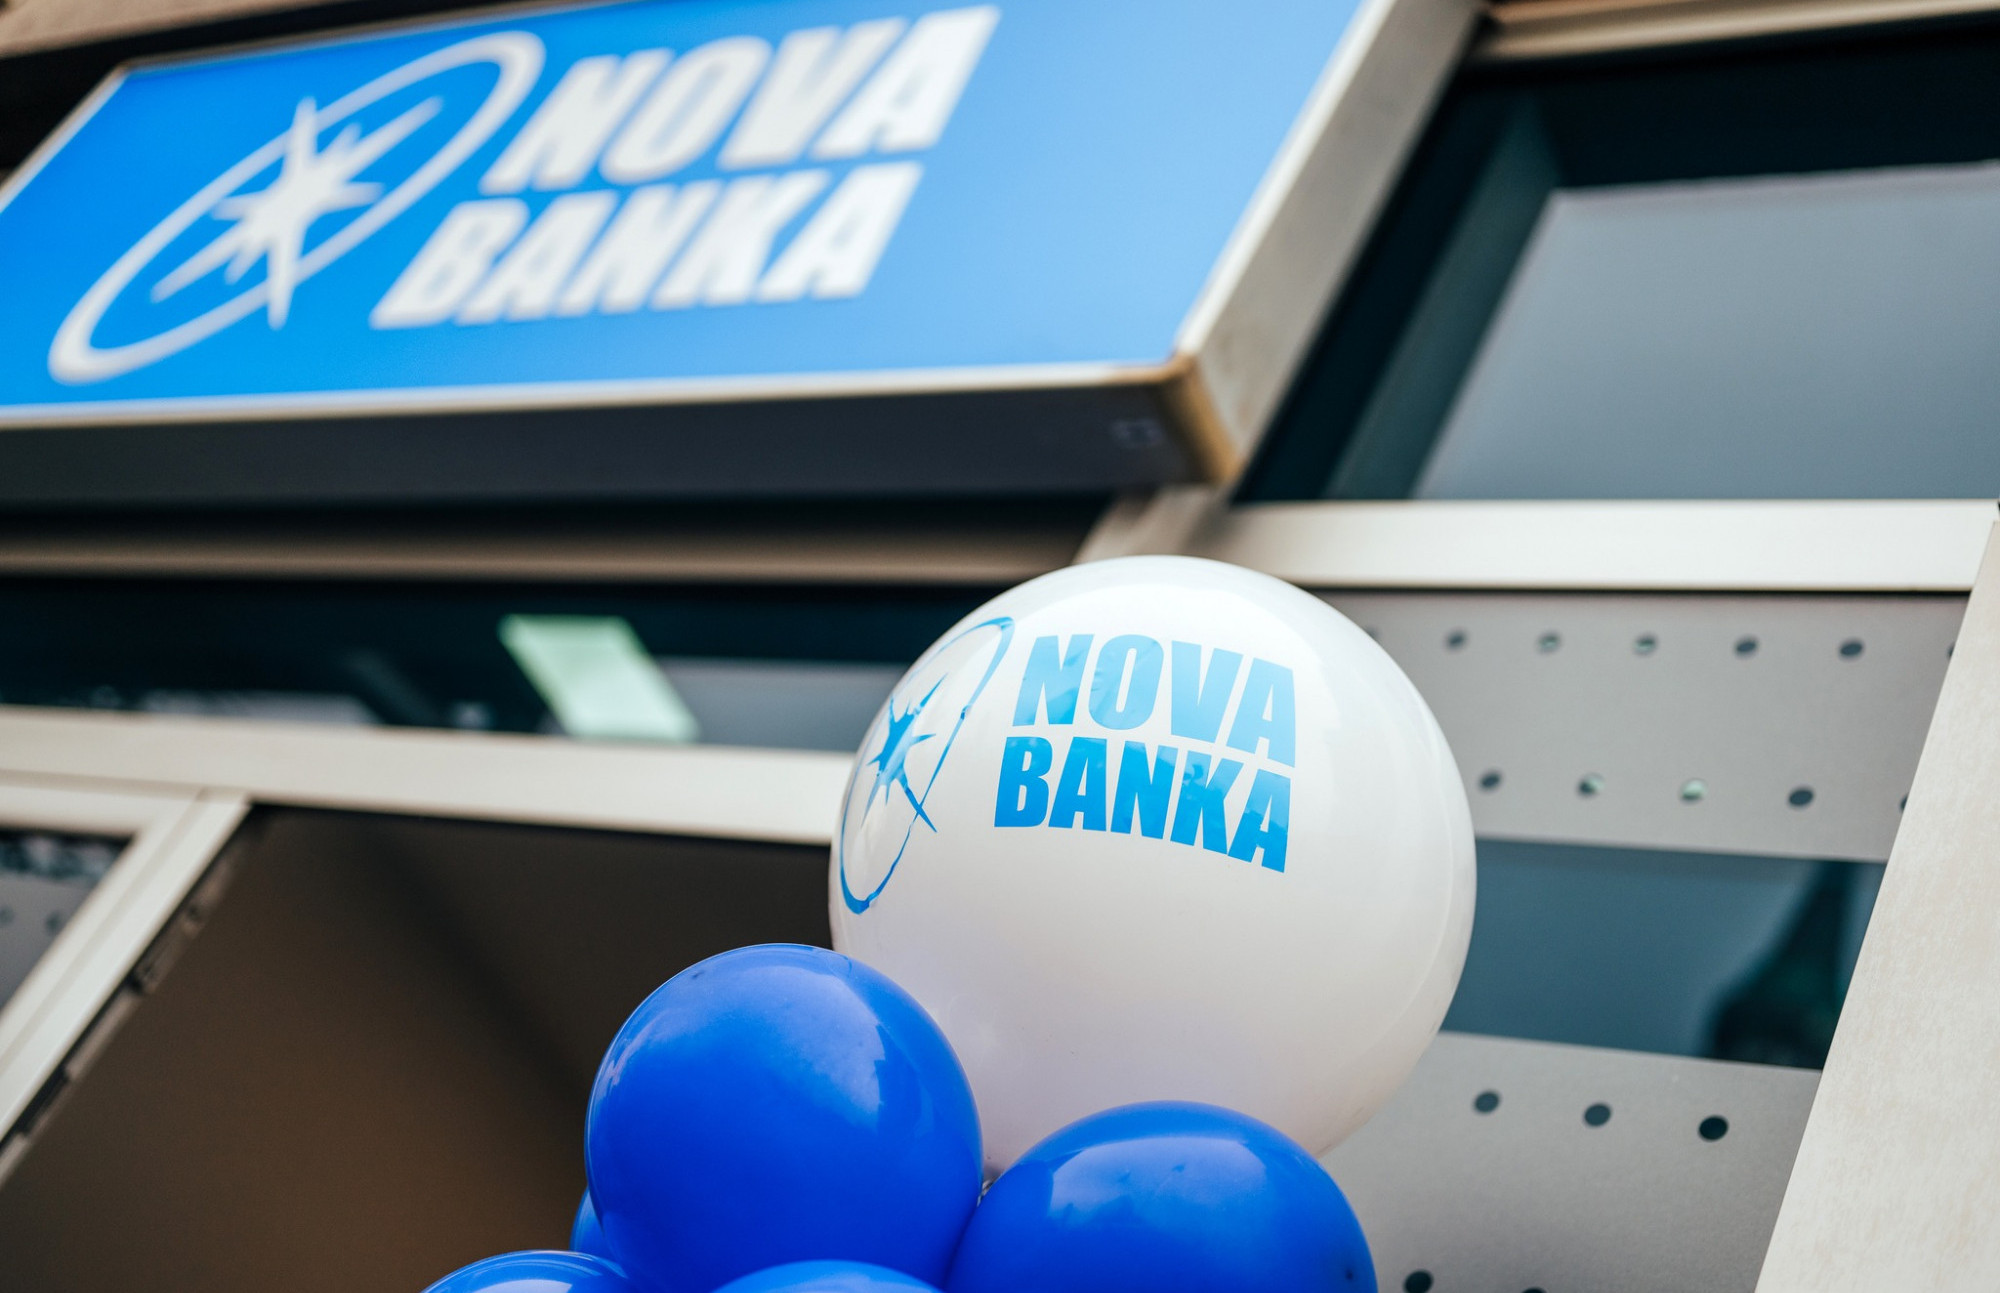 Nova banka: Prihodi od kamata premašili 100 miliona KM